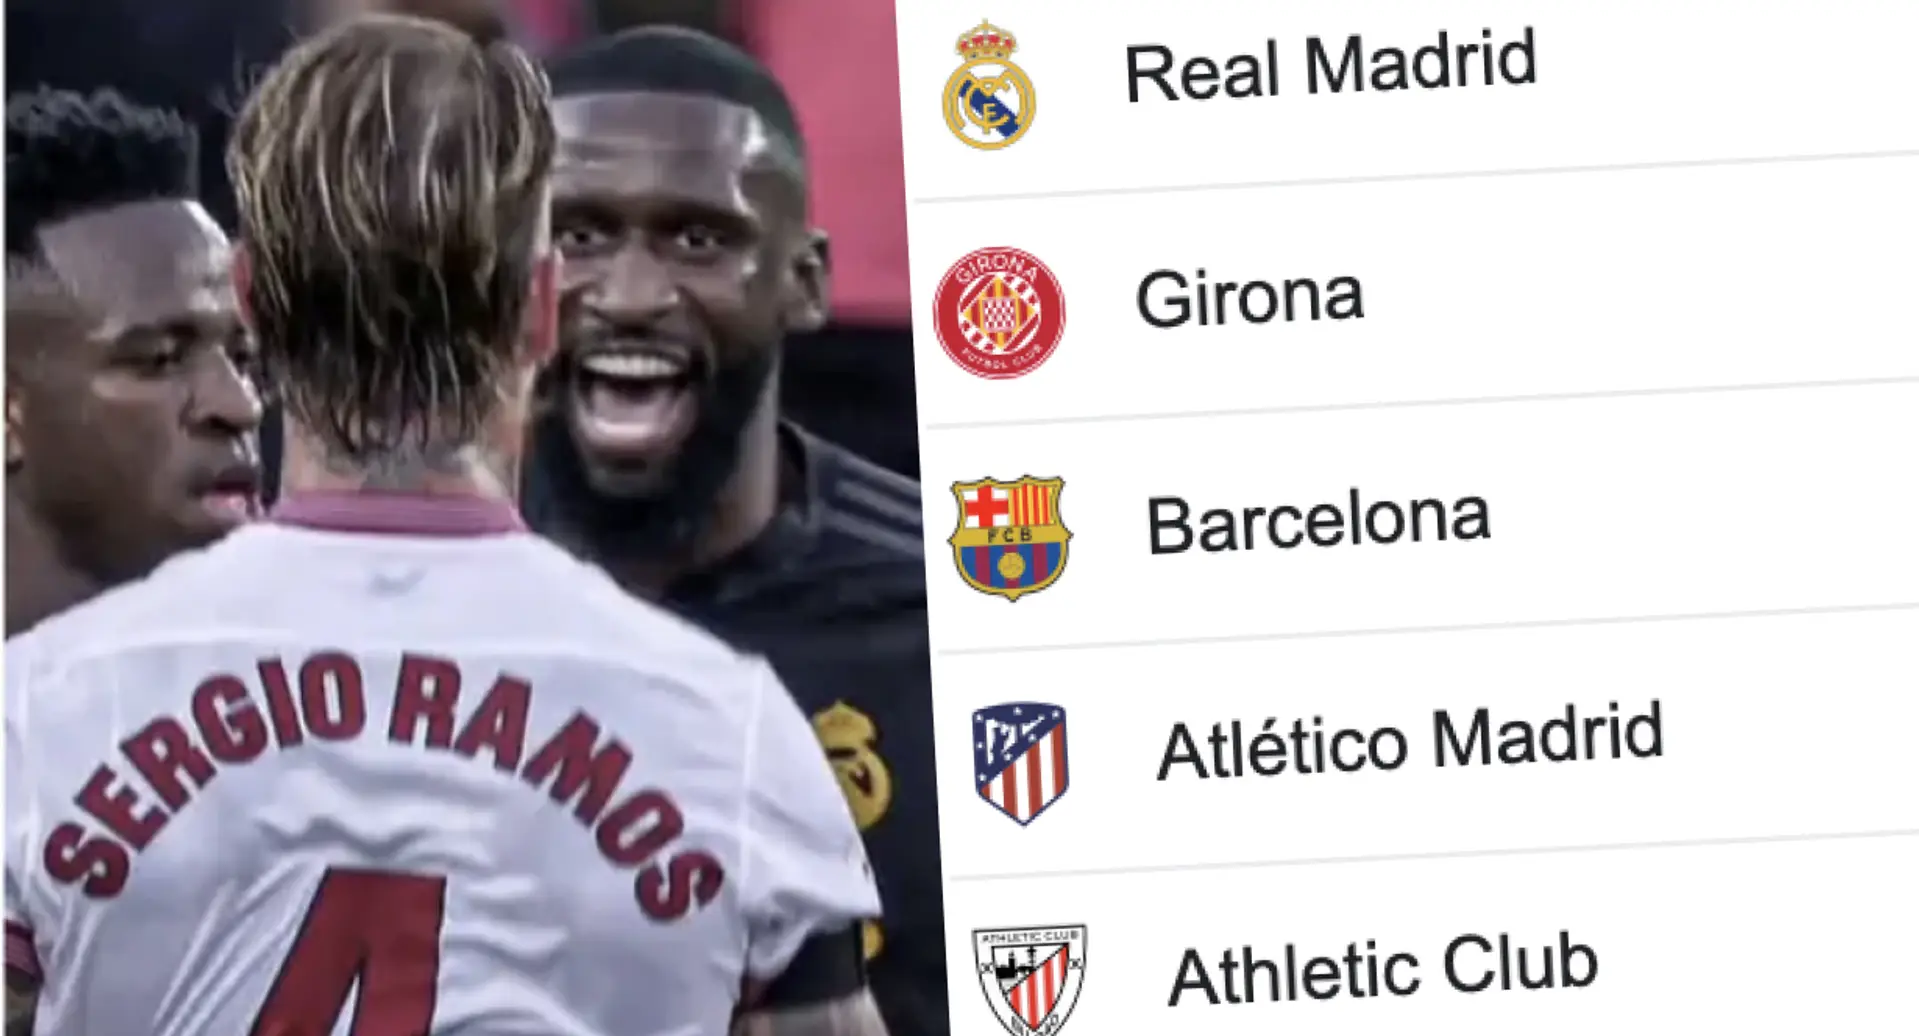 Dónde se sitúa el Real Madrid tras la jornada 25: clasificación actual de La Liga